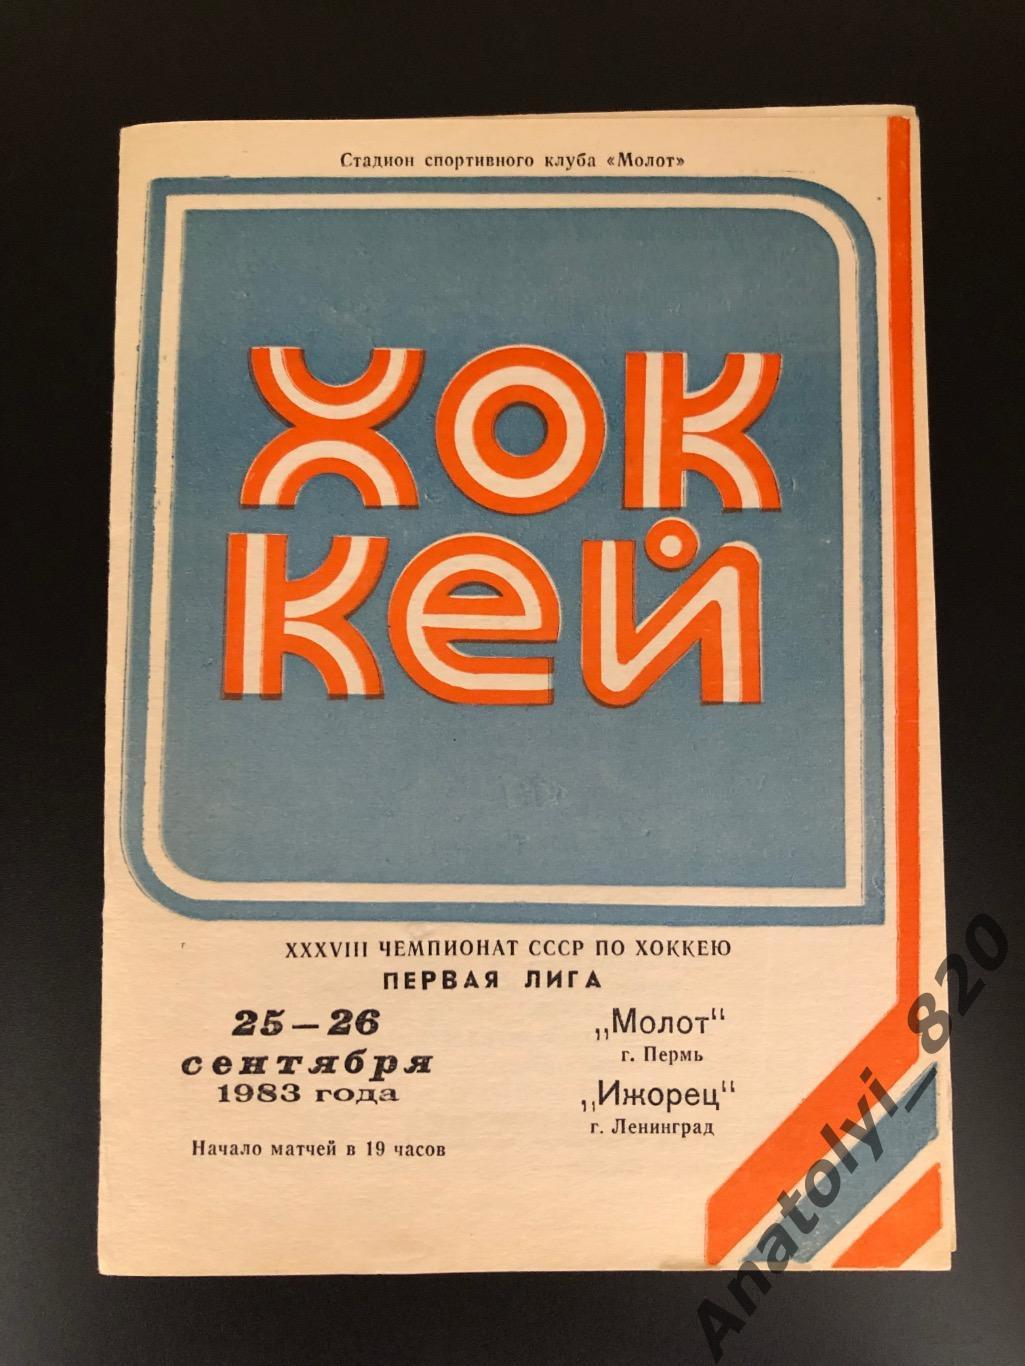 ХК Молот Пермь - ХК Ижорец Ленинград, 25-26.09.1983